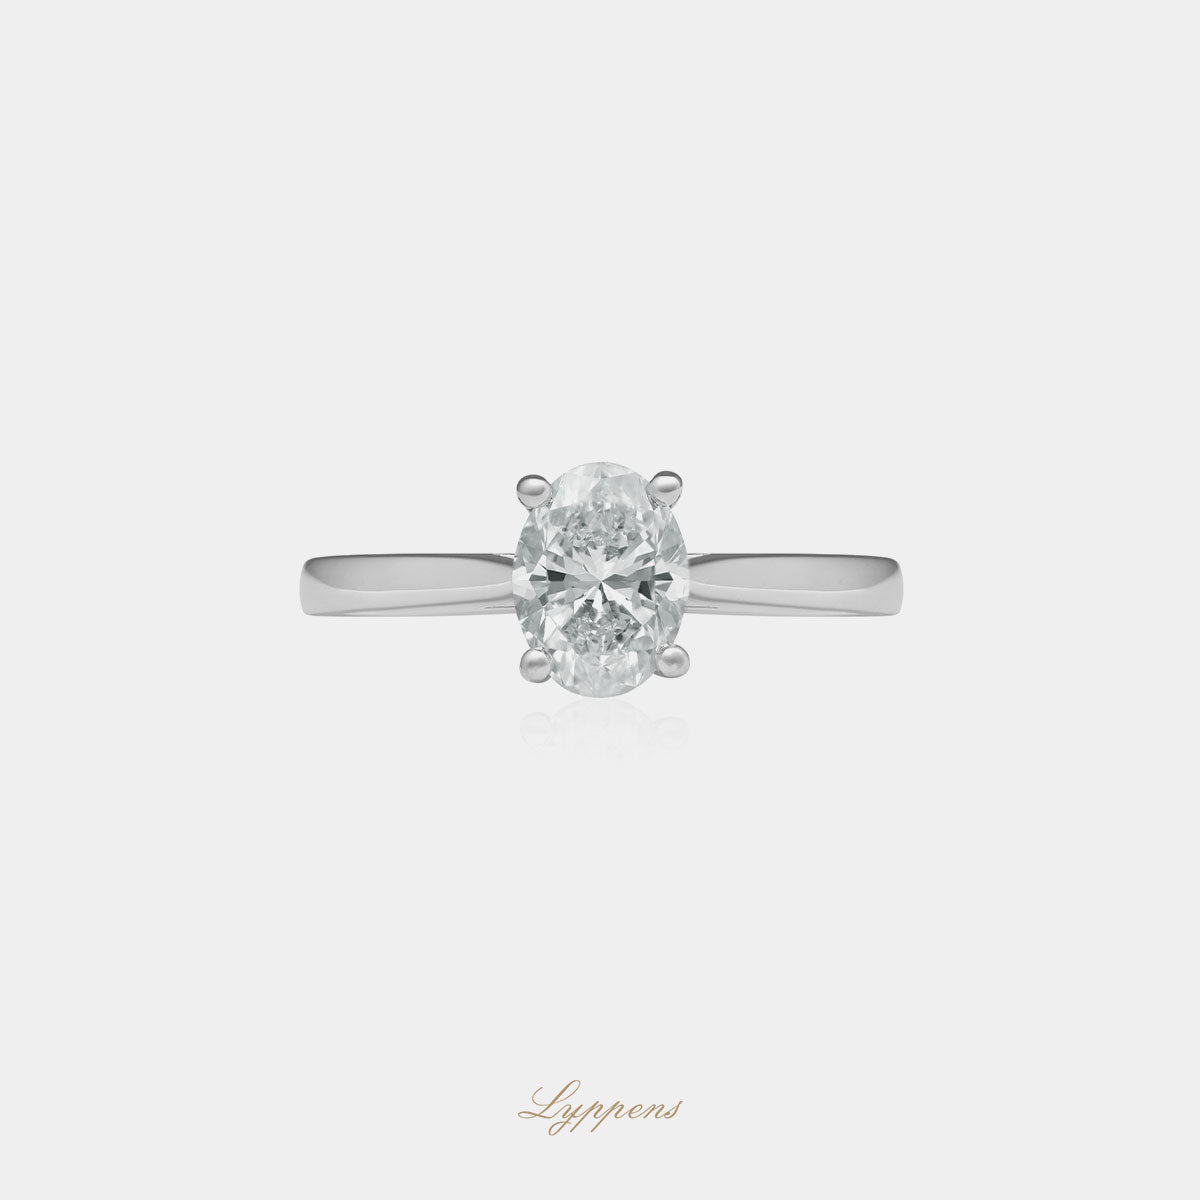 Witgouden solitair verlovingsring, deze ring is in het midden gezet met een ovaal geslepen diamant.